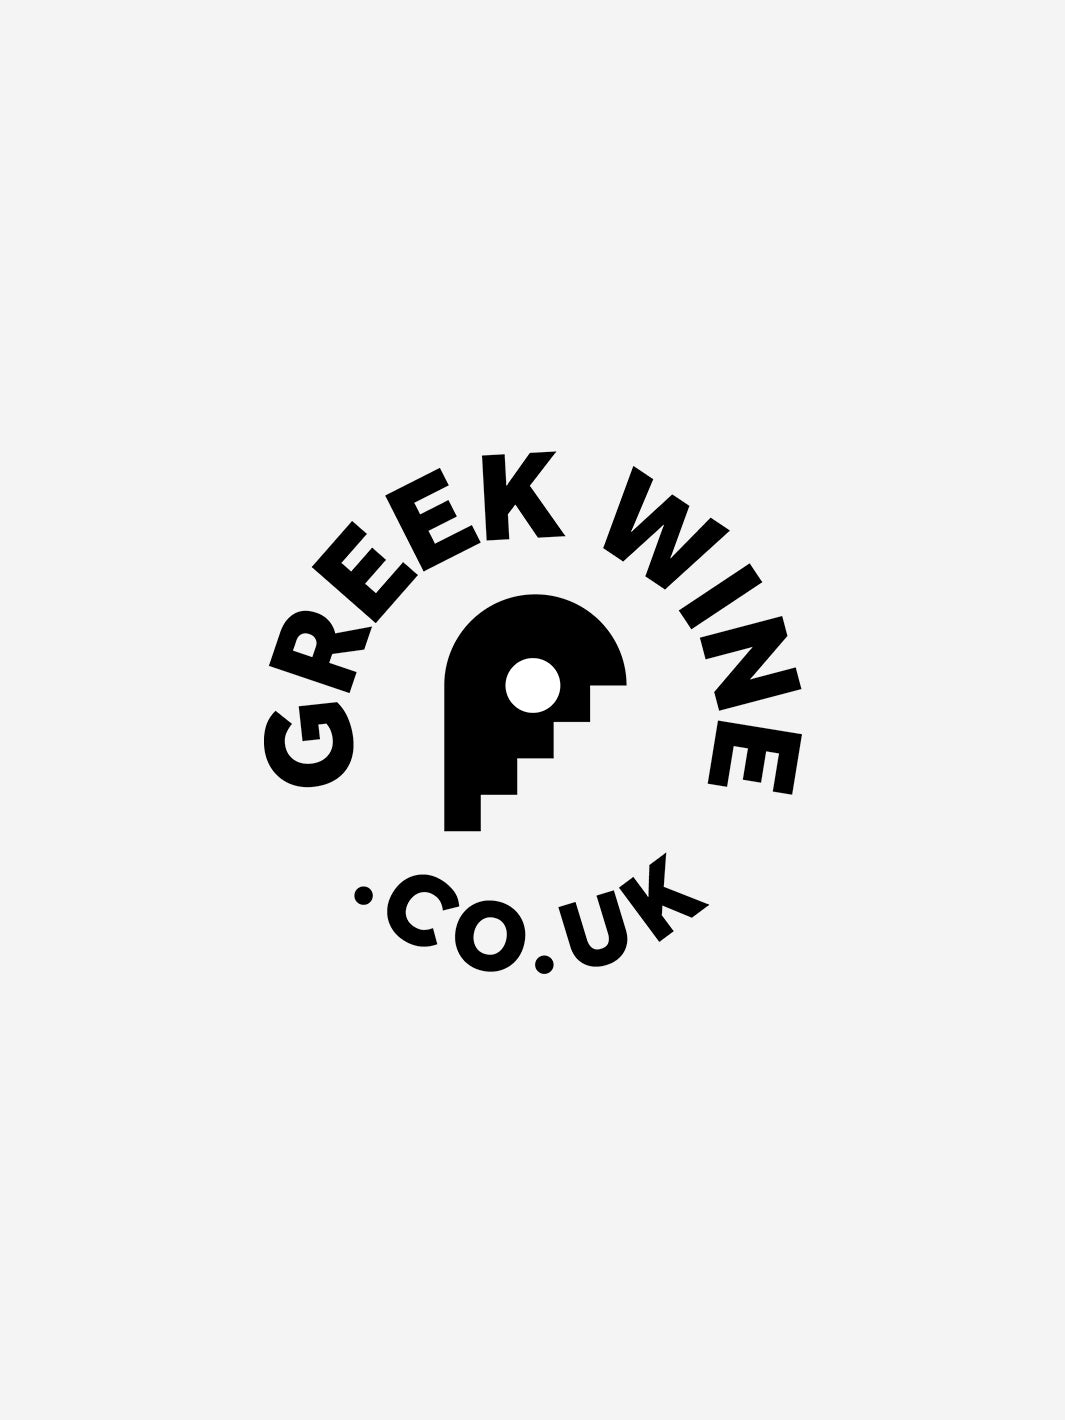 GreekWine.co.uk Gift Card